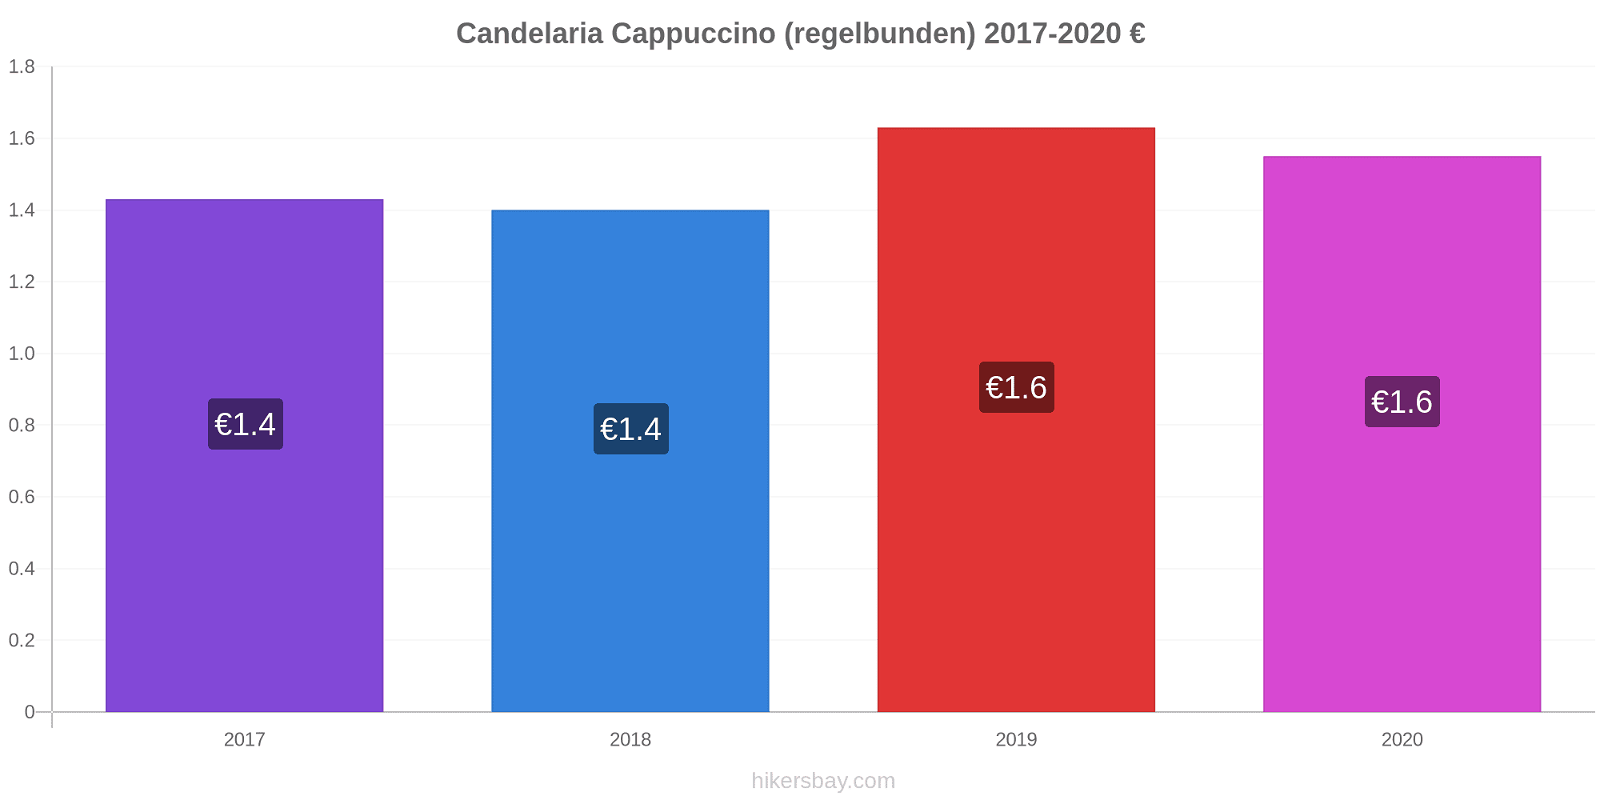 Candelaria prisförändringar Cappuccino (regelbunden) hikersbay.com